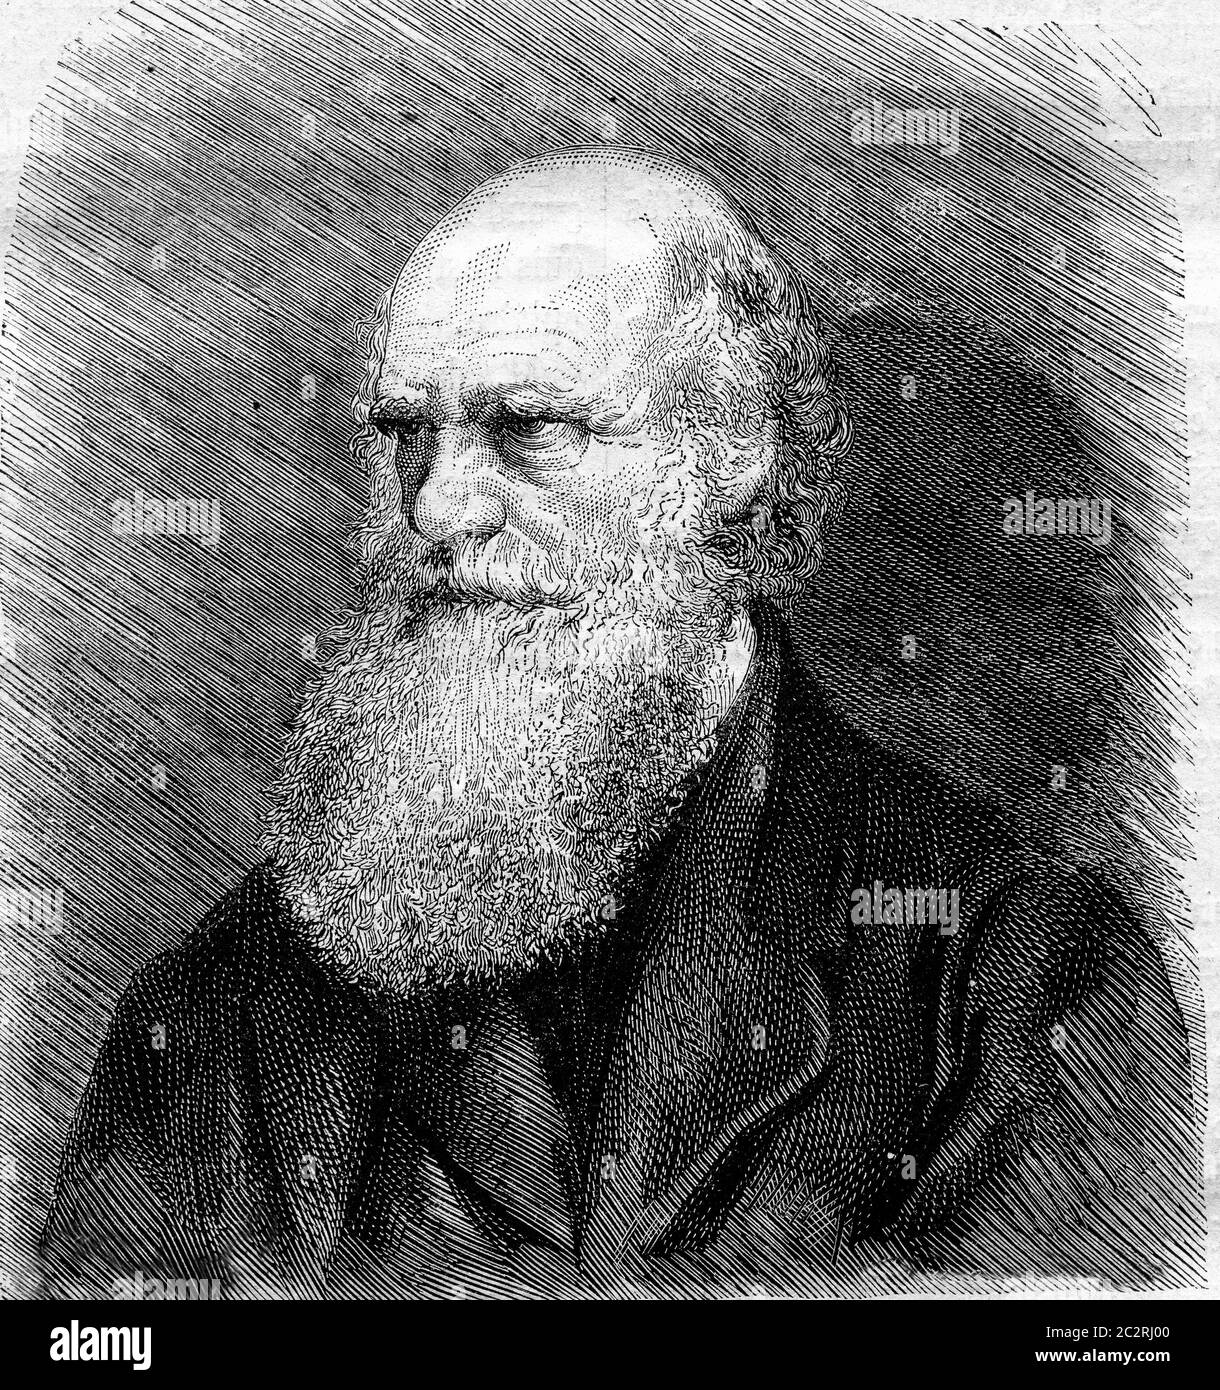 Charles Darwin starb im April 1882 nach einer Fotografie, Vintage graviert Illustration. Magasin Pittoresque 1882. Stockfoto